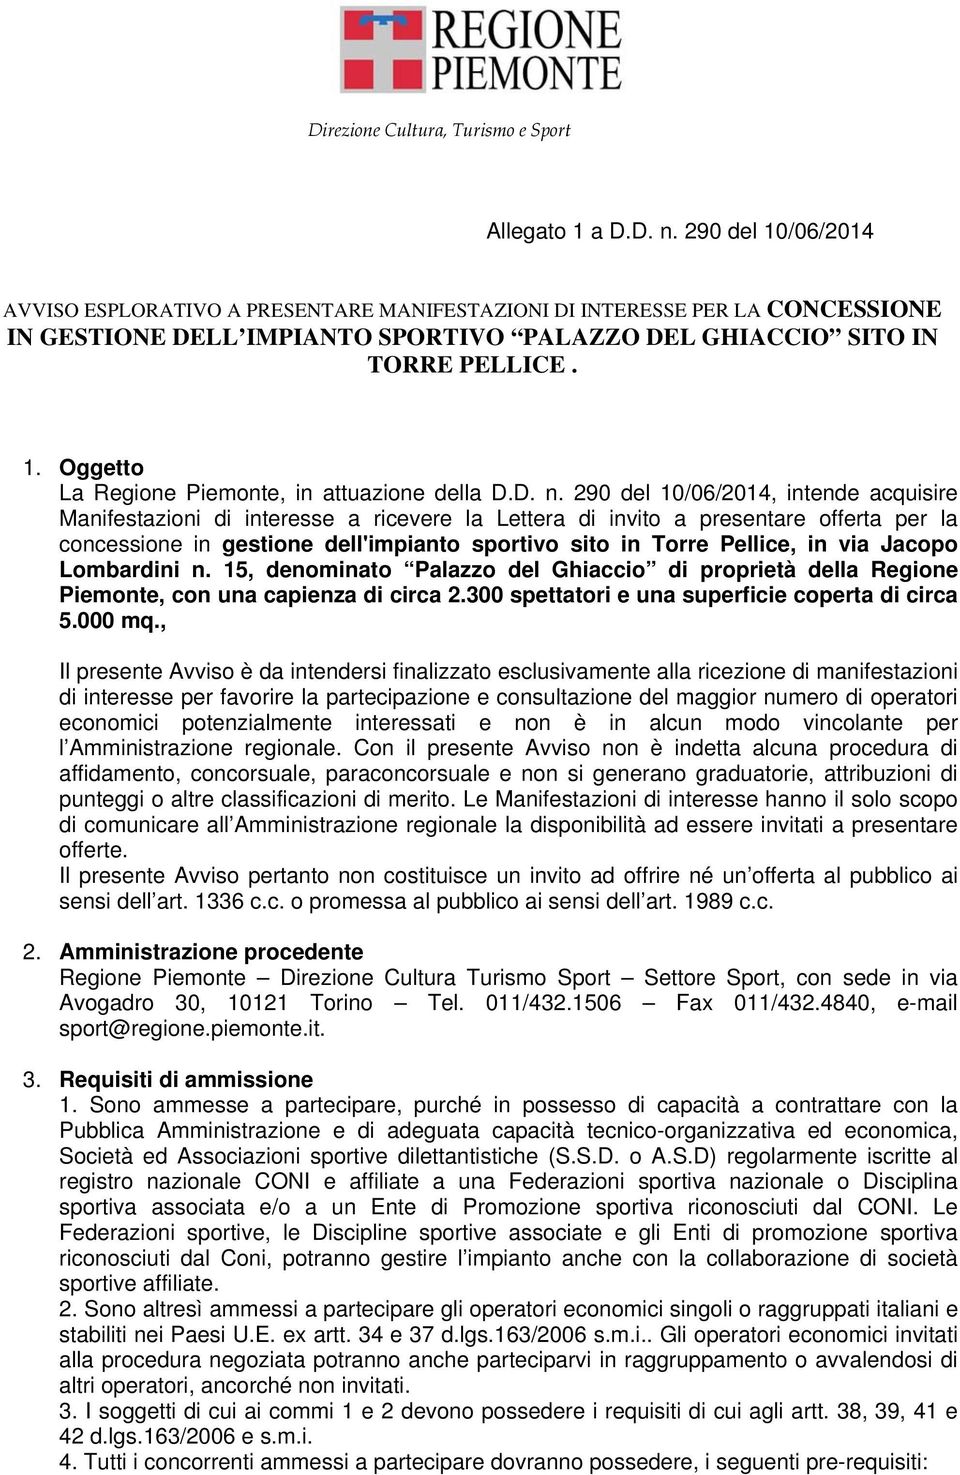 D. n. 290 del 10/06/2014, intende acquisire Manifestazioni di interesse a ricevere la Lettera di invito a presentare offerta per la concessione in gestione dell'impianto sportivo sito in Torre